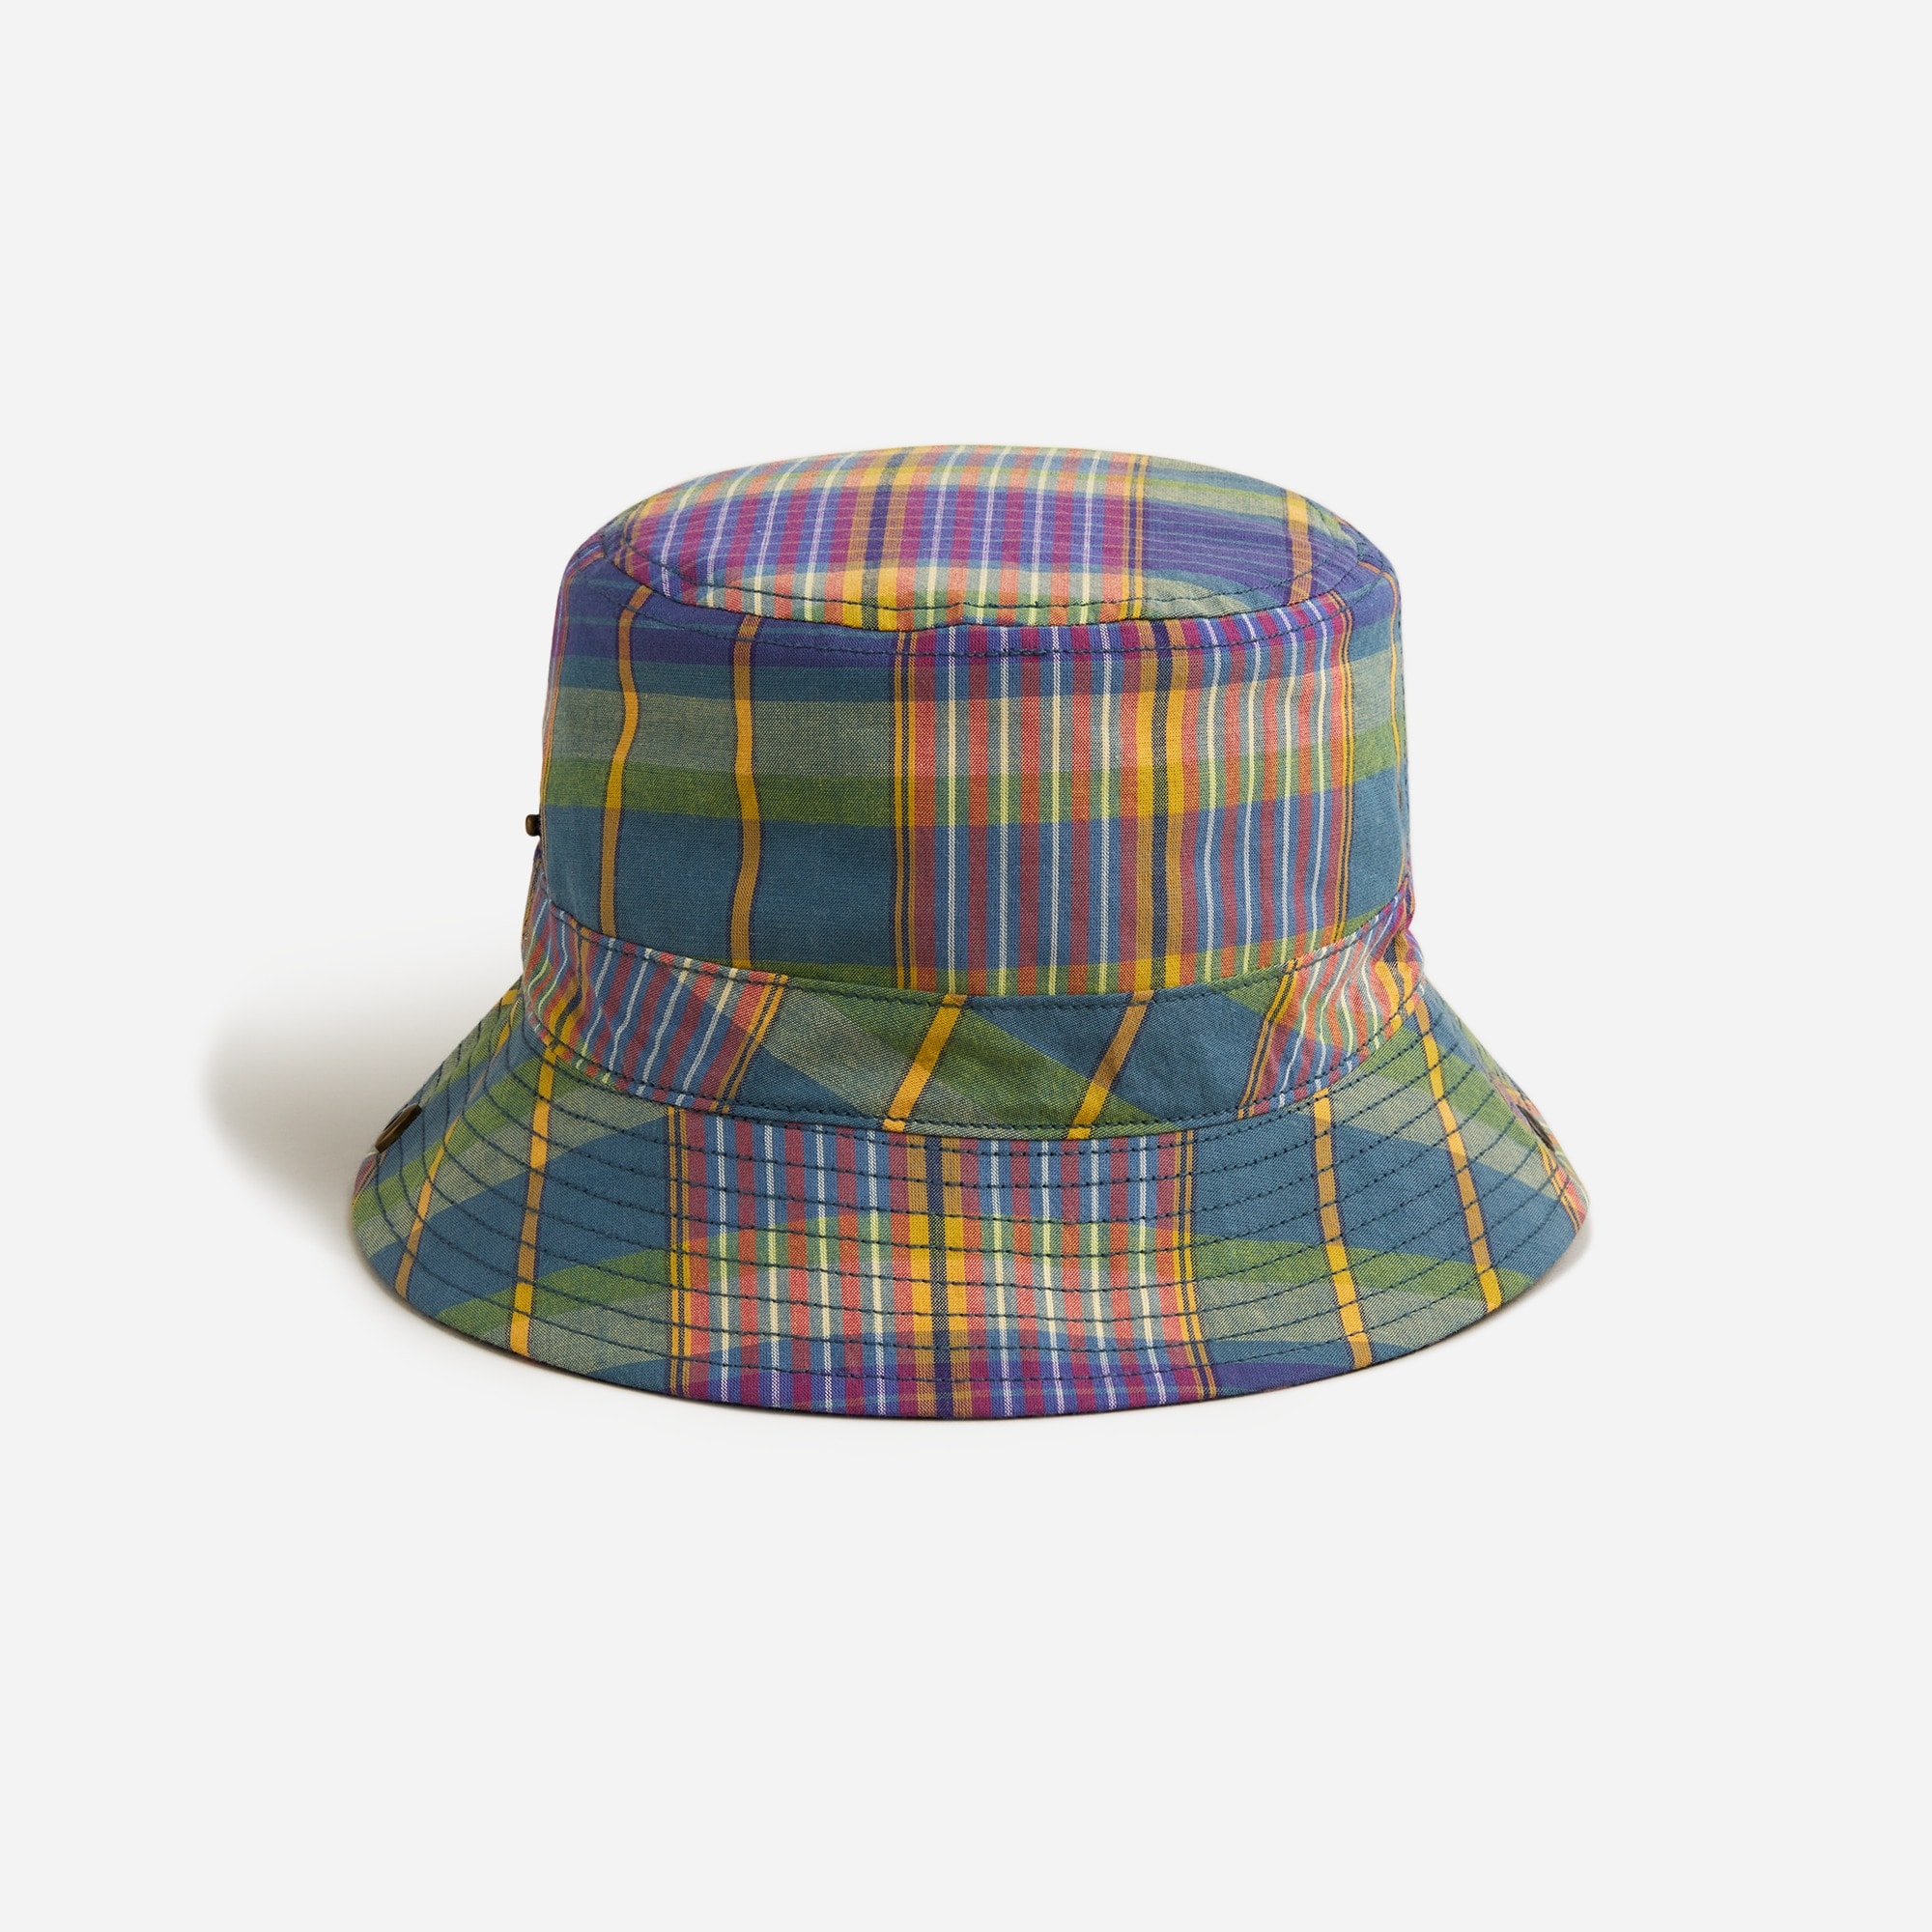  Reversible bucket hat in madras